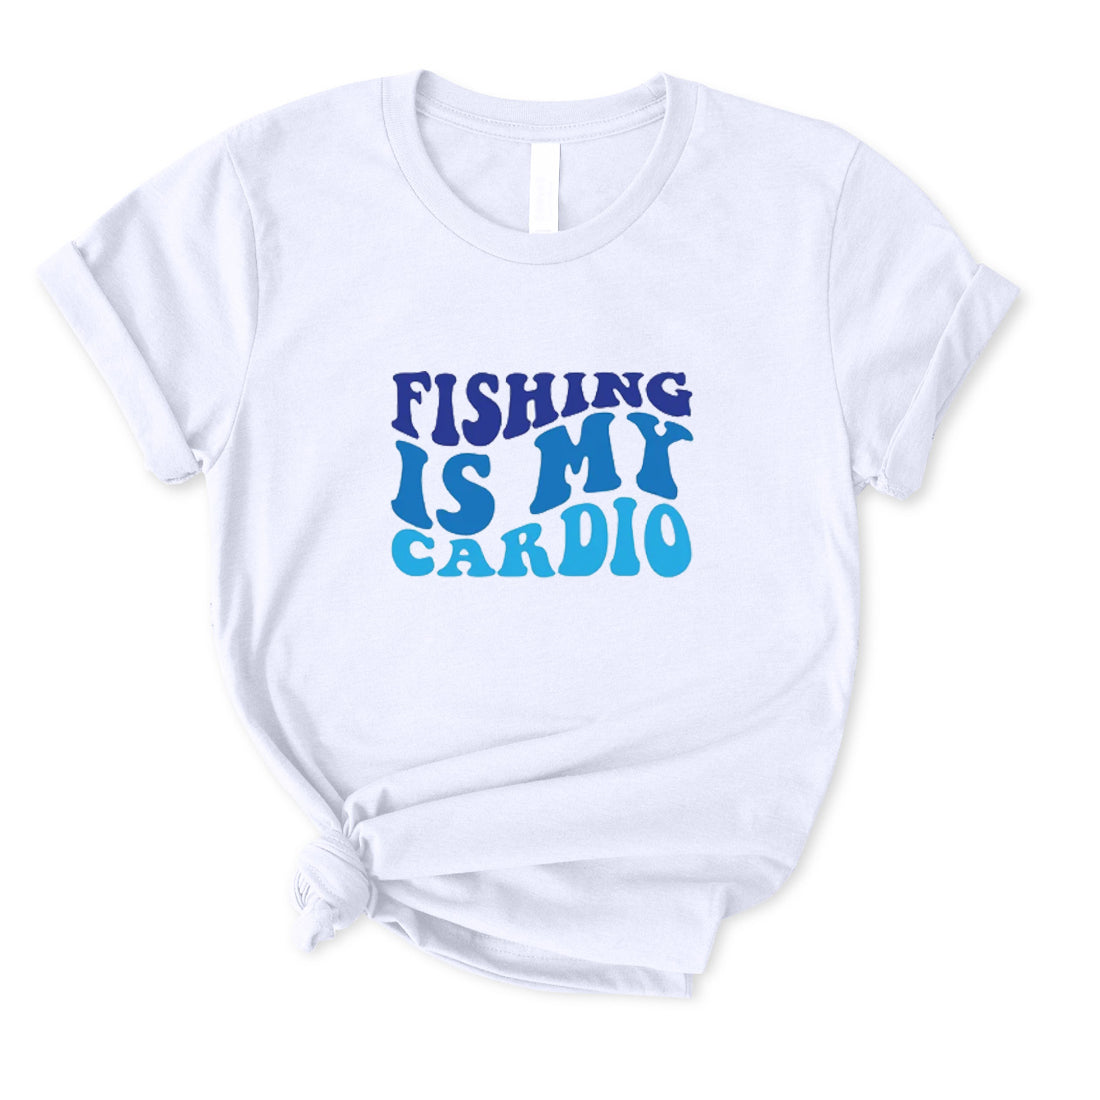 Fishing Is My Cardio T-Shirt for Women